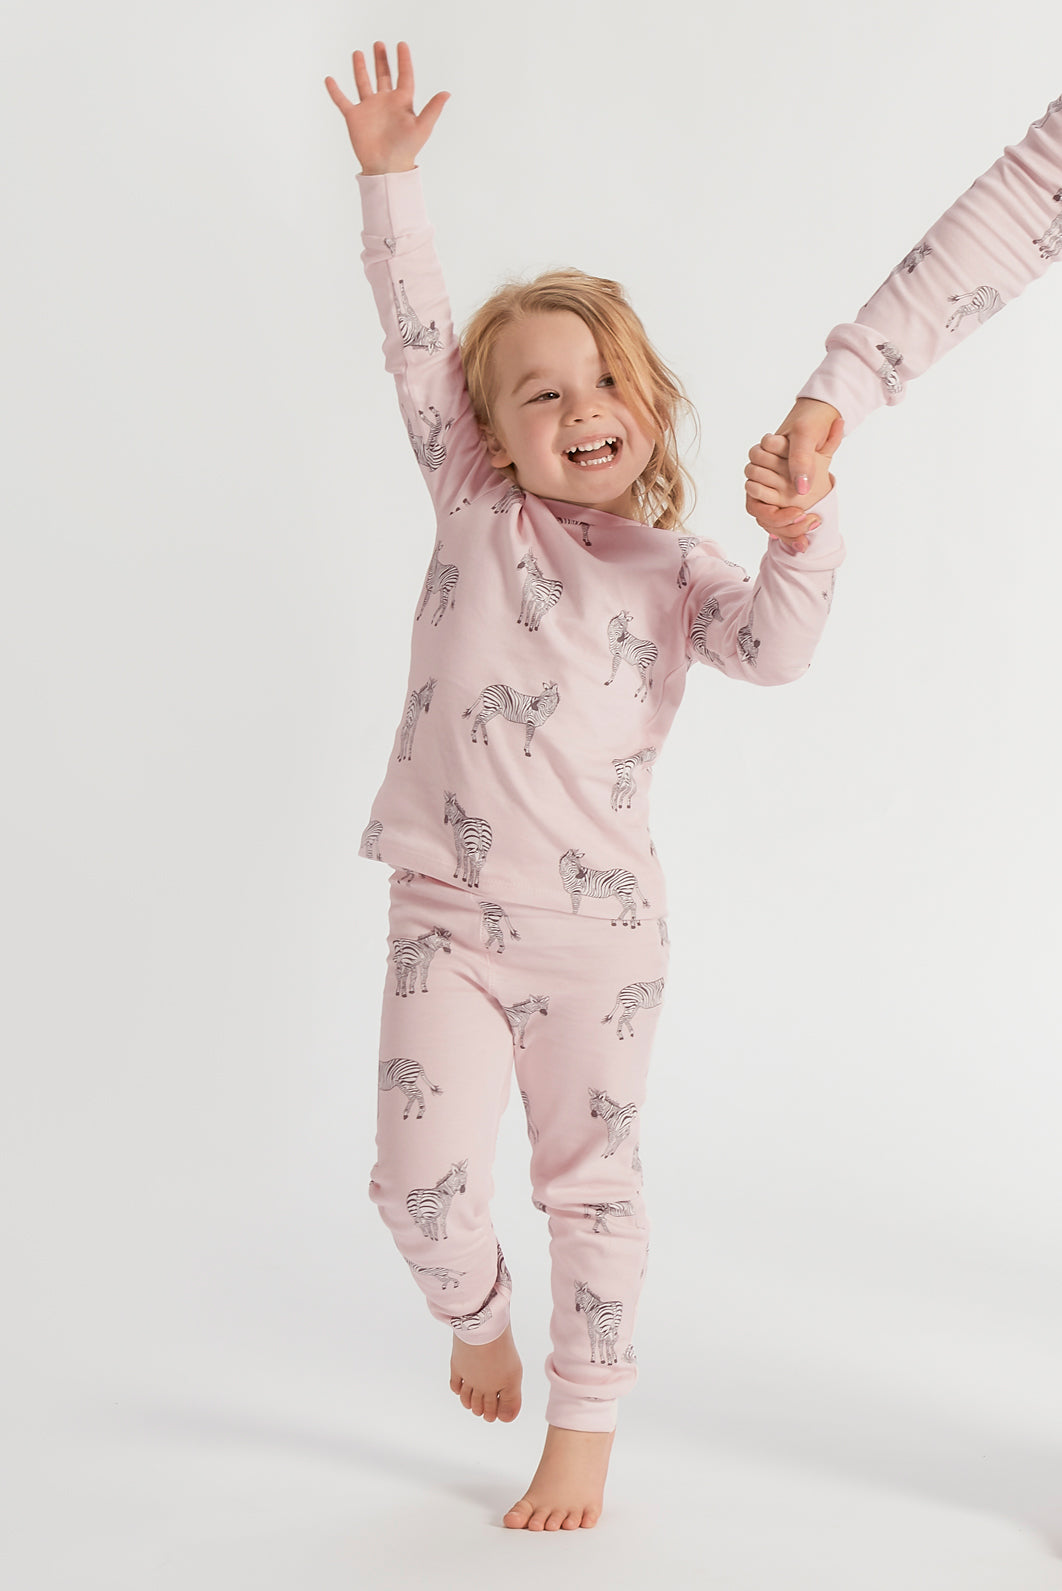 Mummy & Daughter Matching Pyjamas | Tiffy & Tallulah